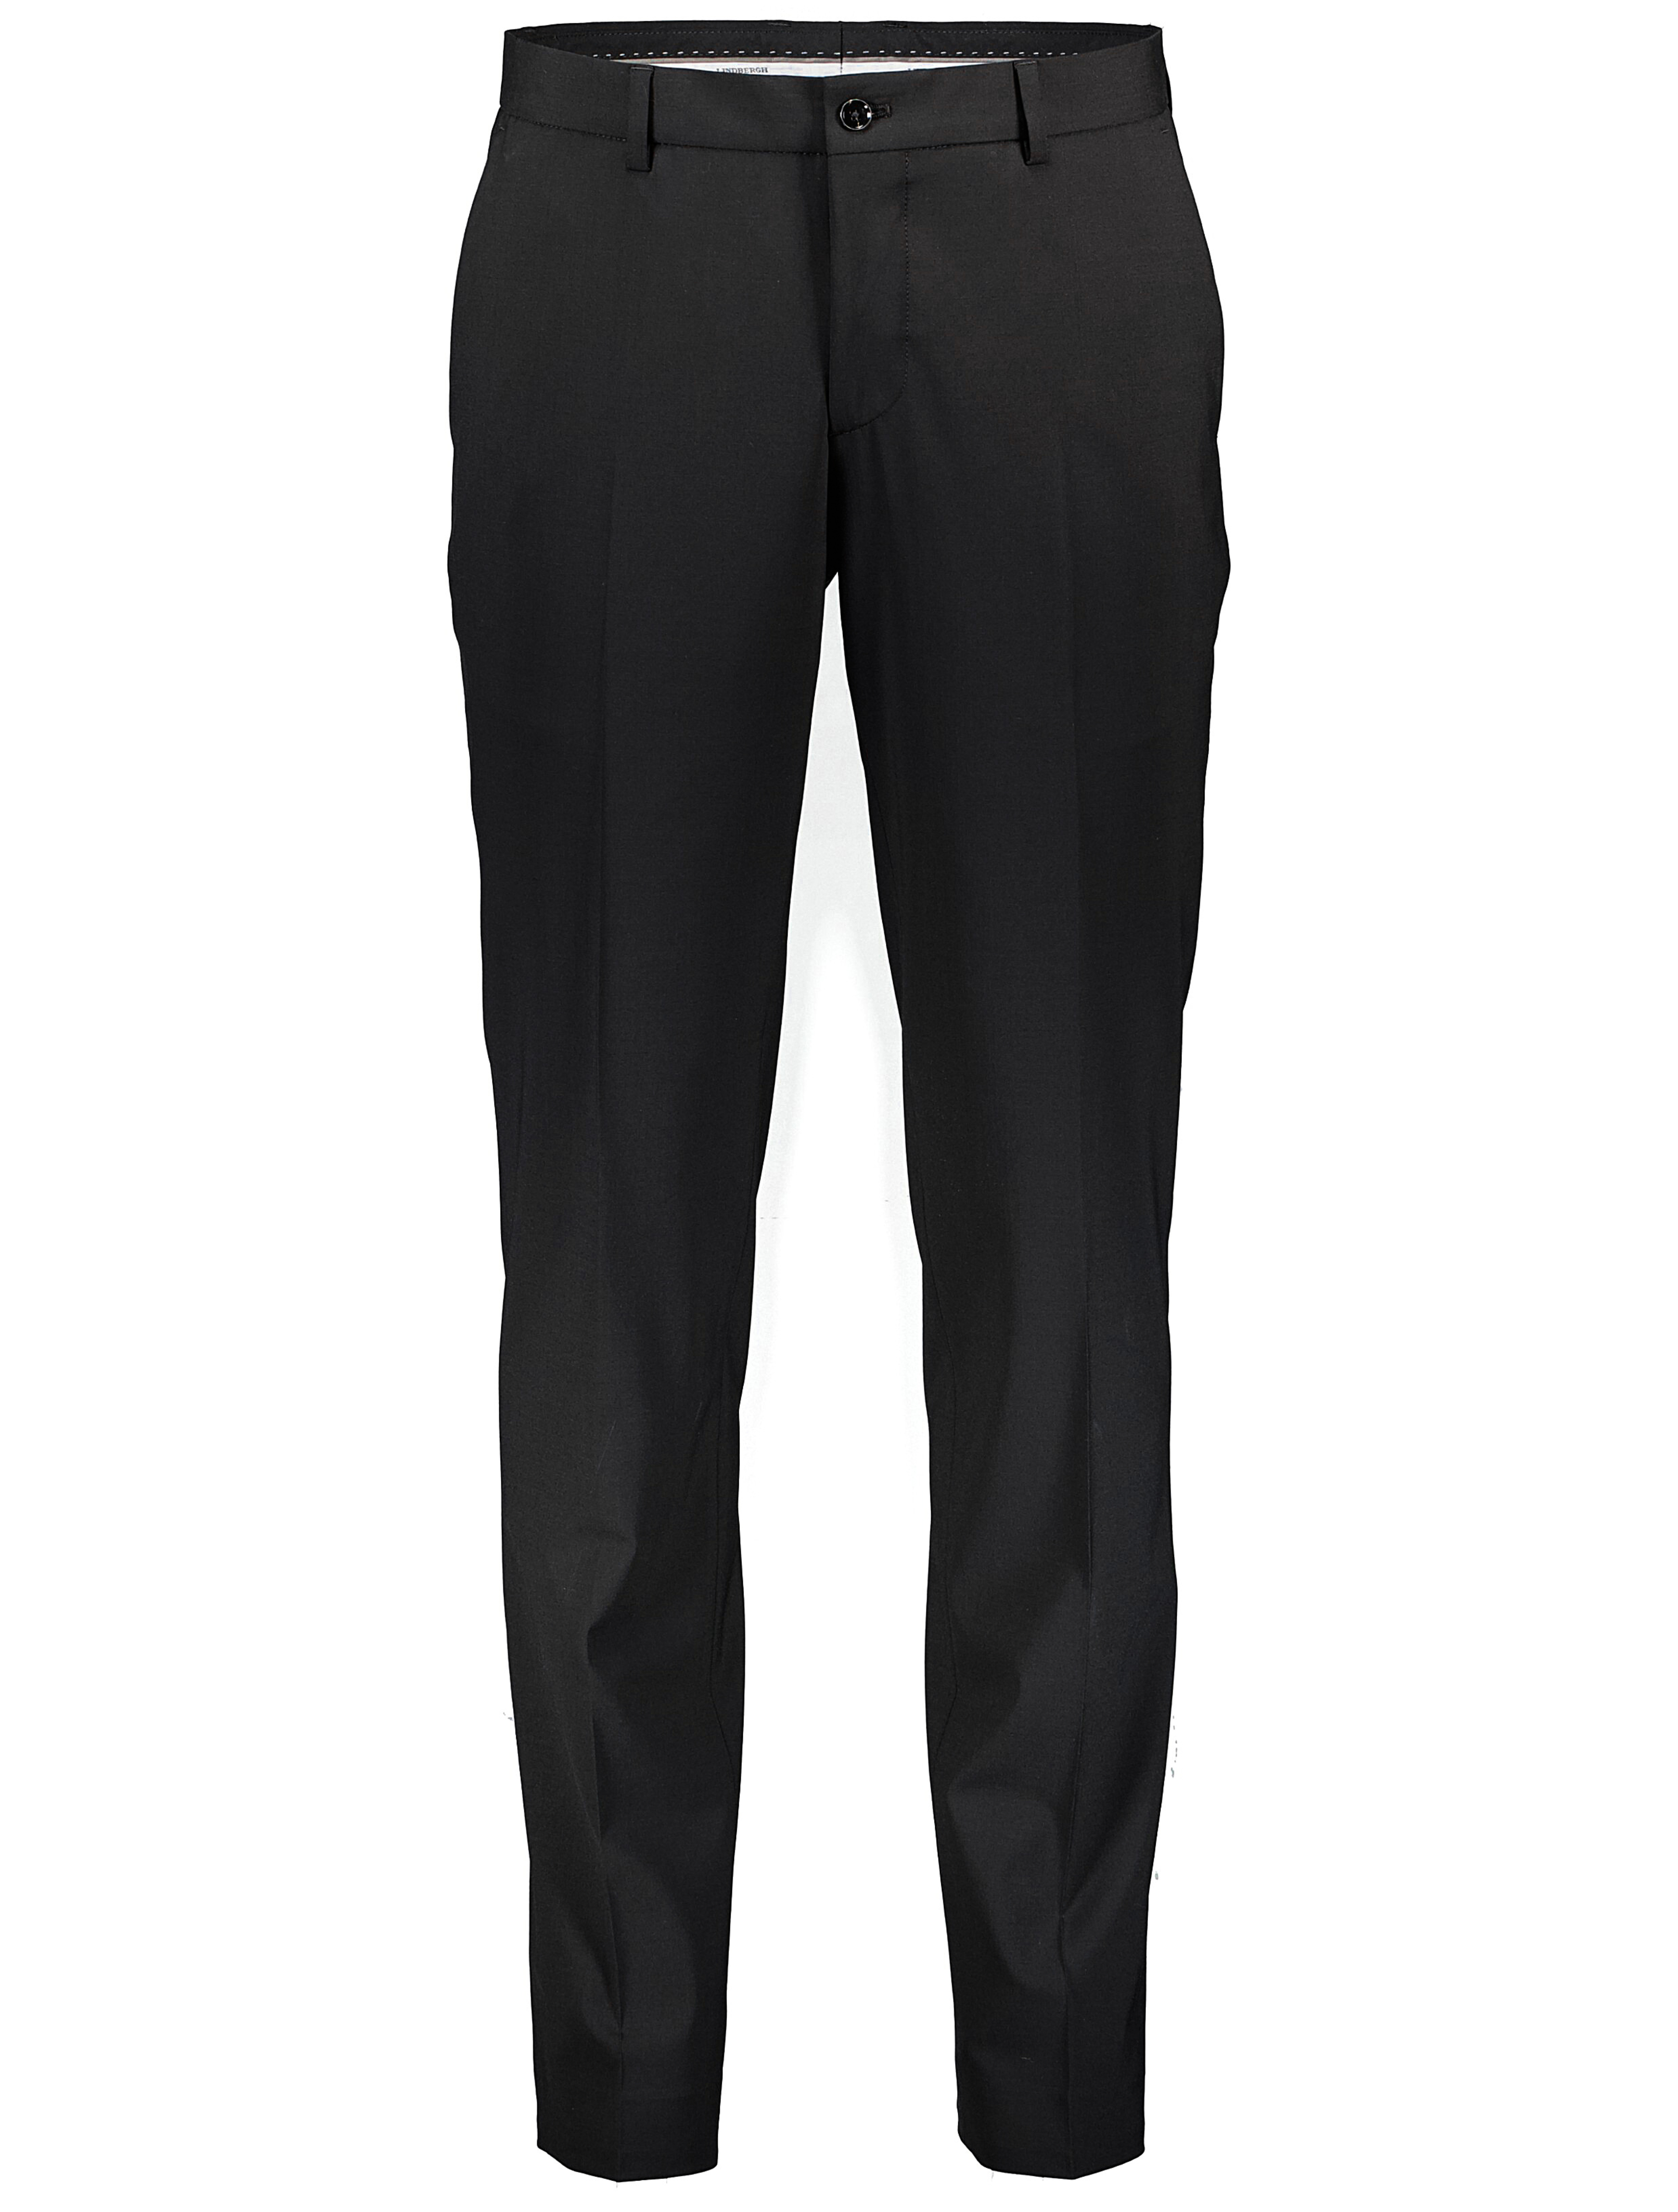 Lindbergh Suit Pants black / black